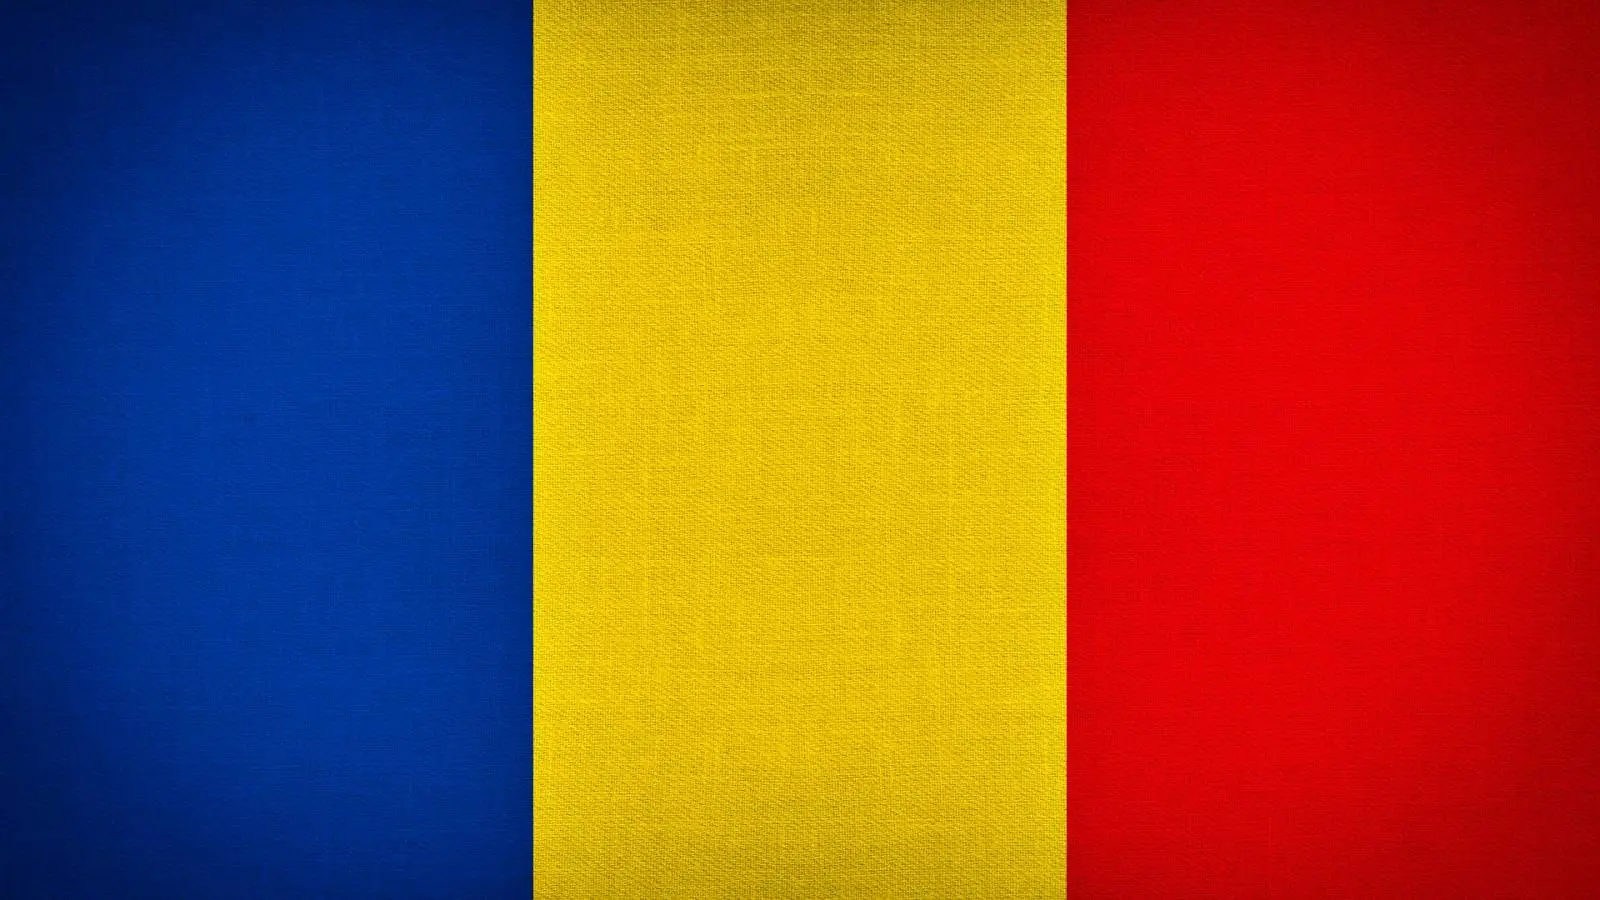 Roumanie: un problème d'annonce de dernière minute inquiète des millions de personnes